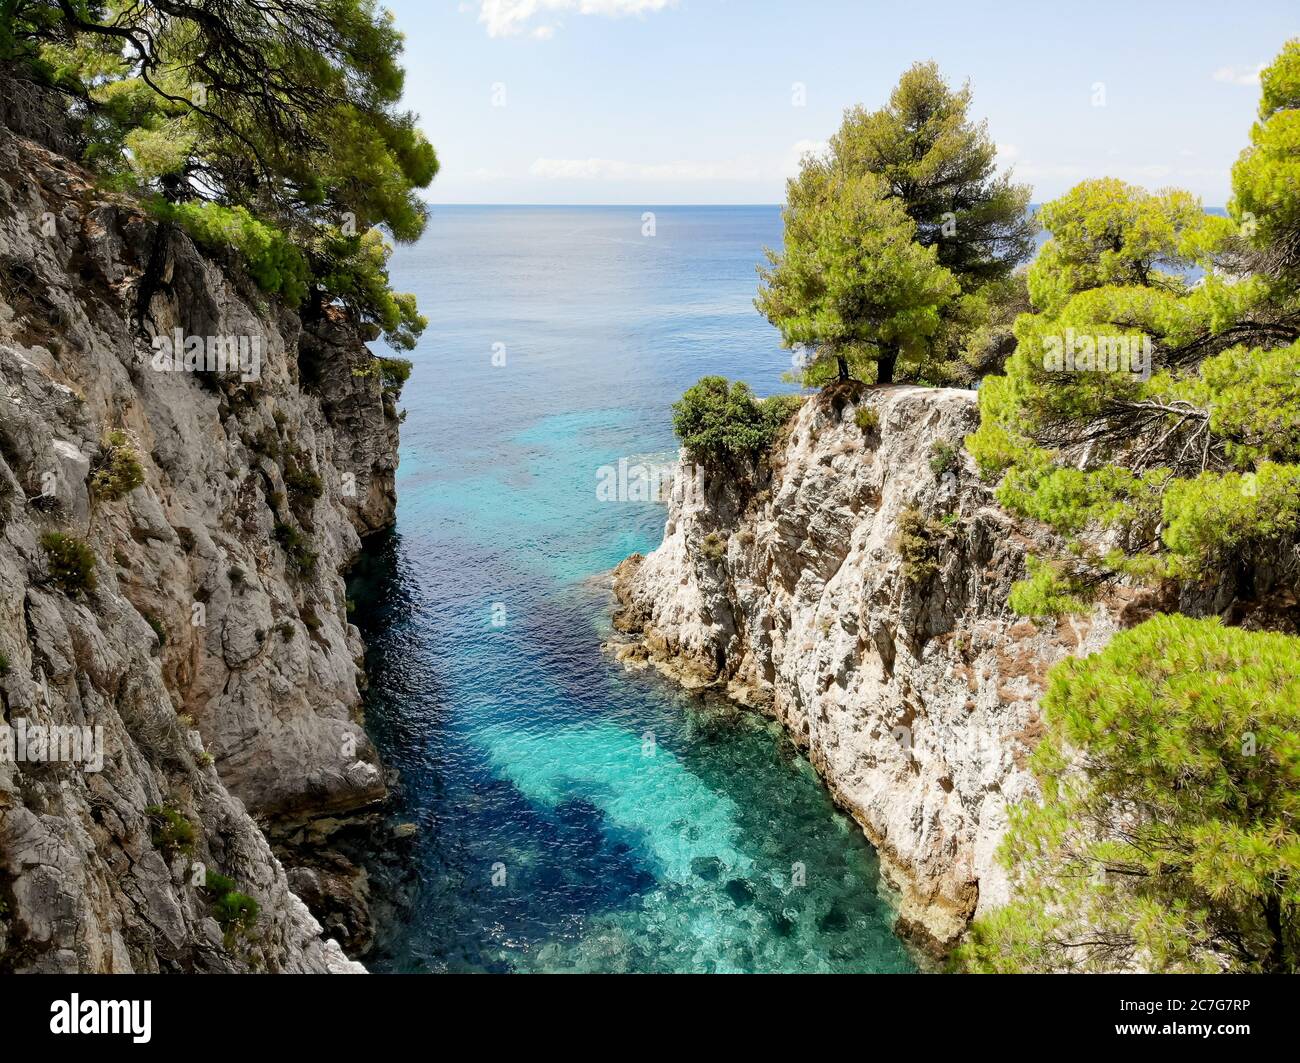 L'acqua turchese limpida della Cove AMARANDOS sull'isola di Skopelos ricorda una vacanza rinfrescante nell'estate mediterranea. Foto Stock